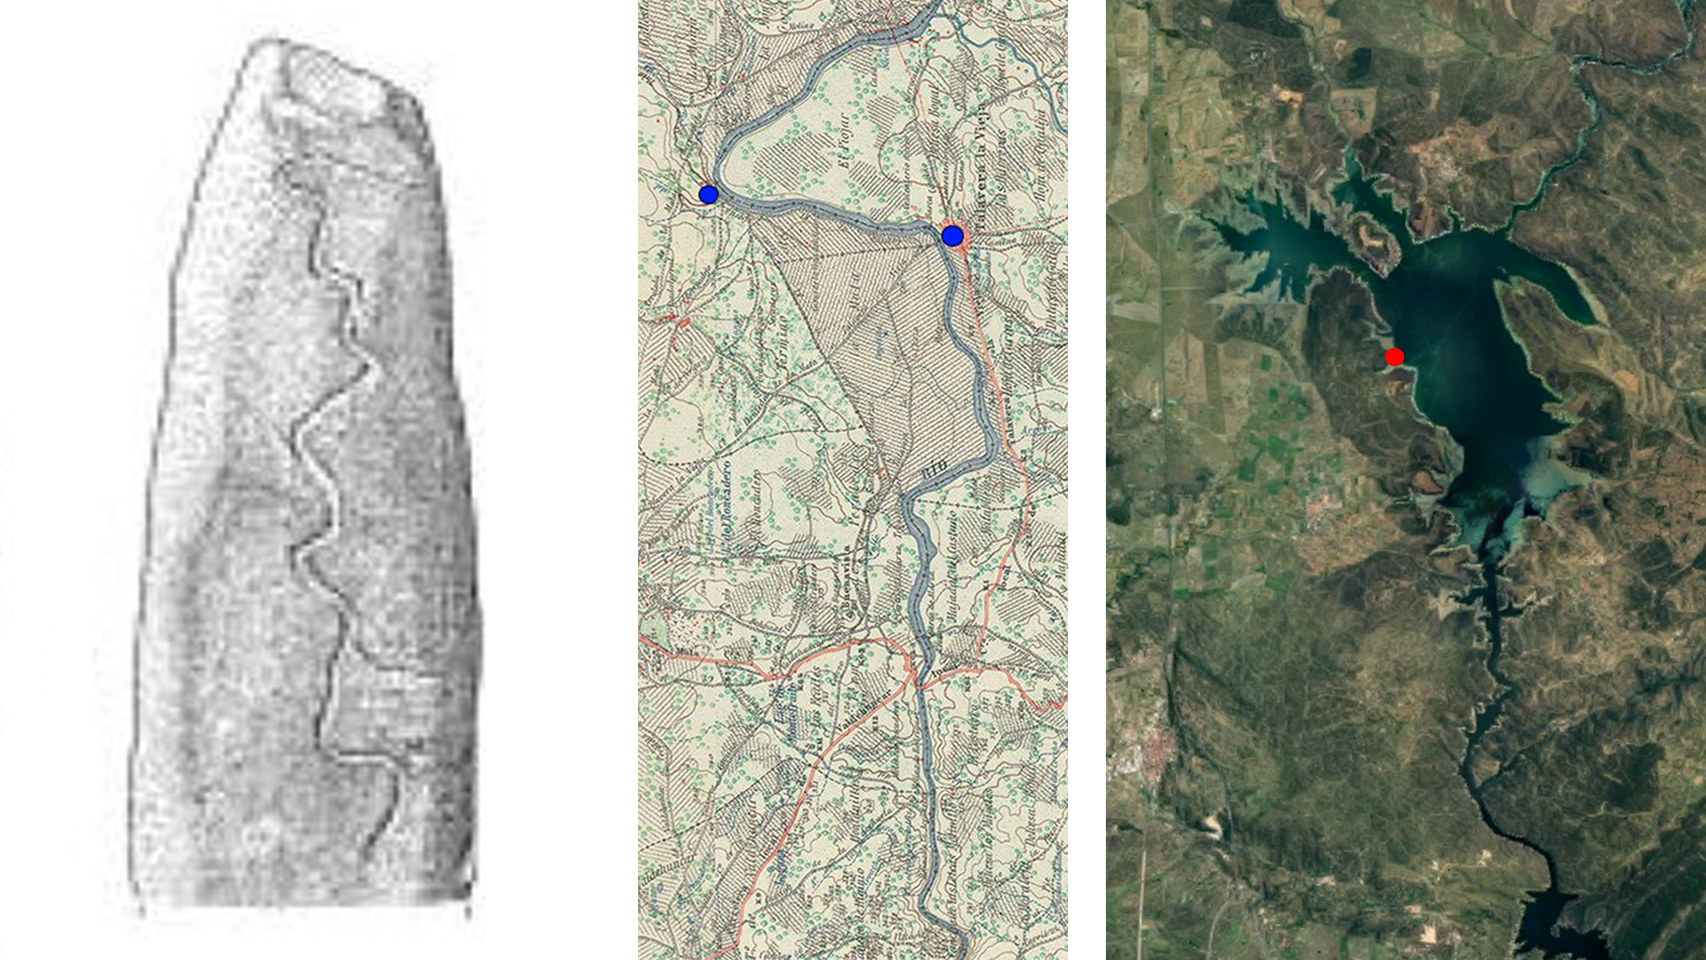 Comparación de la inscripción del menhir, el Tajo antes de la construcción del pantano y el estado actual del río.